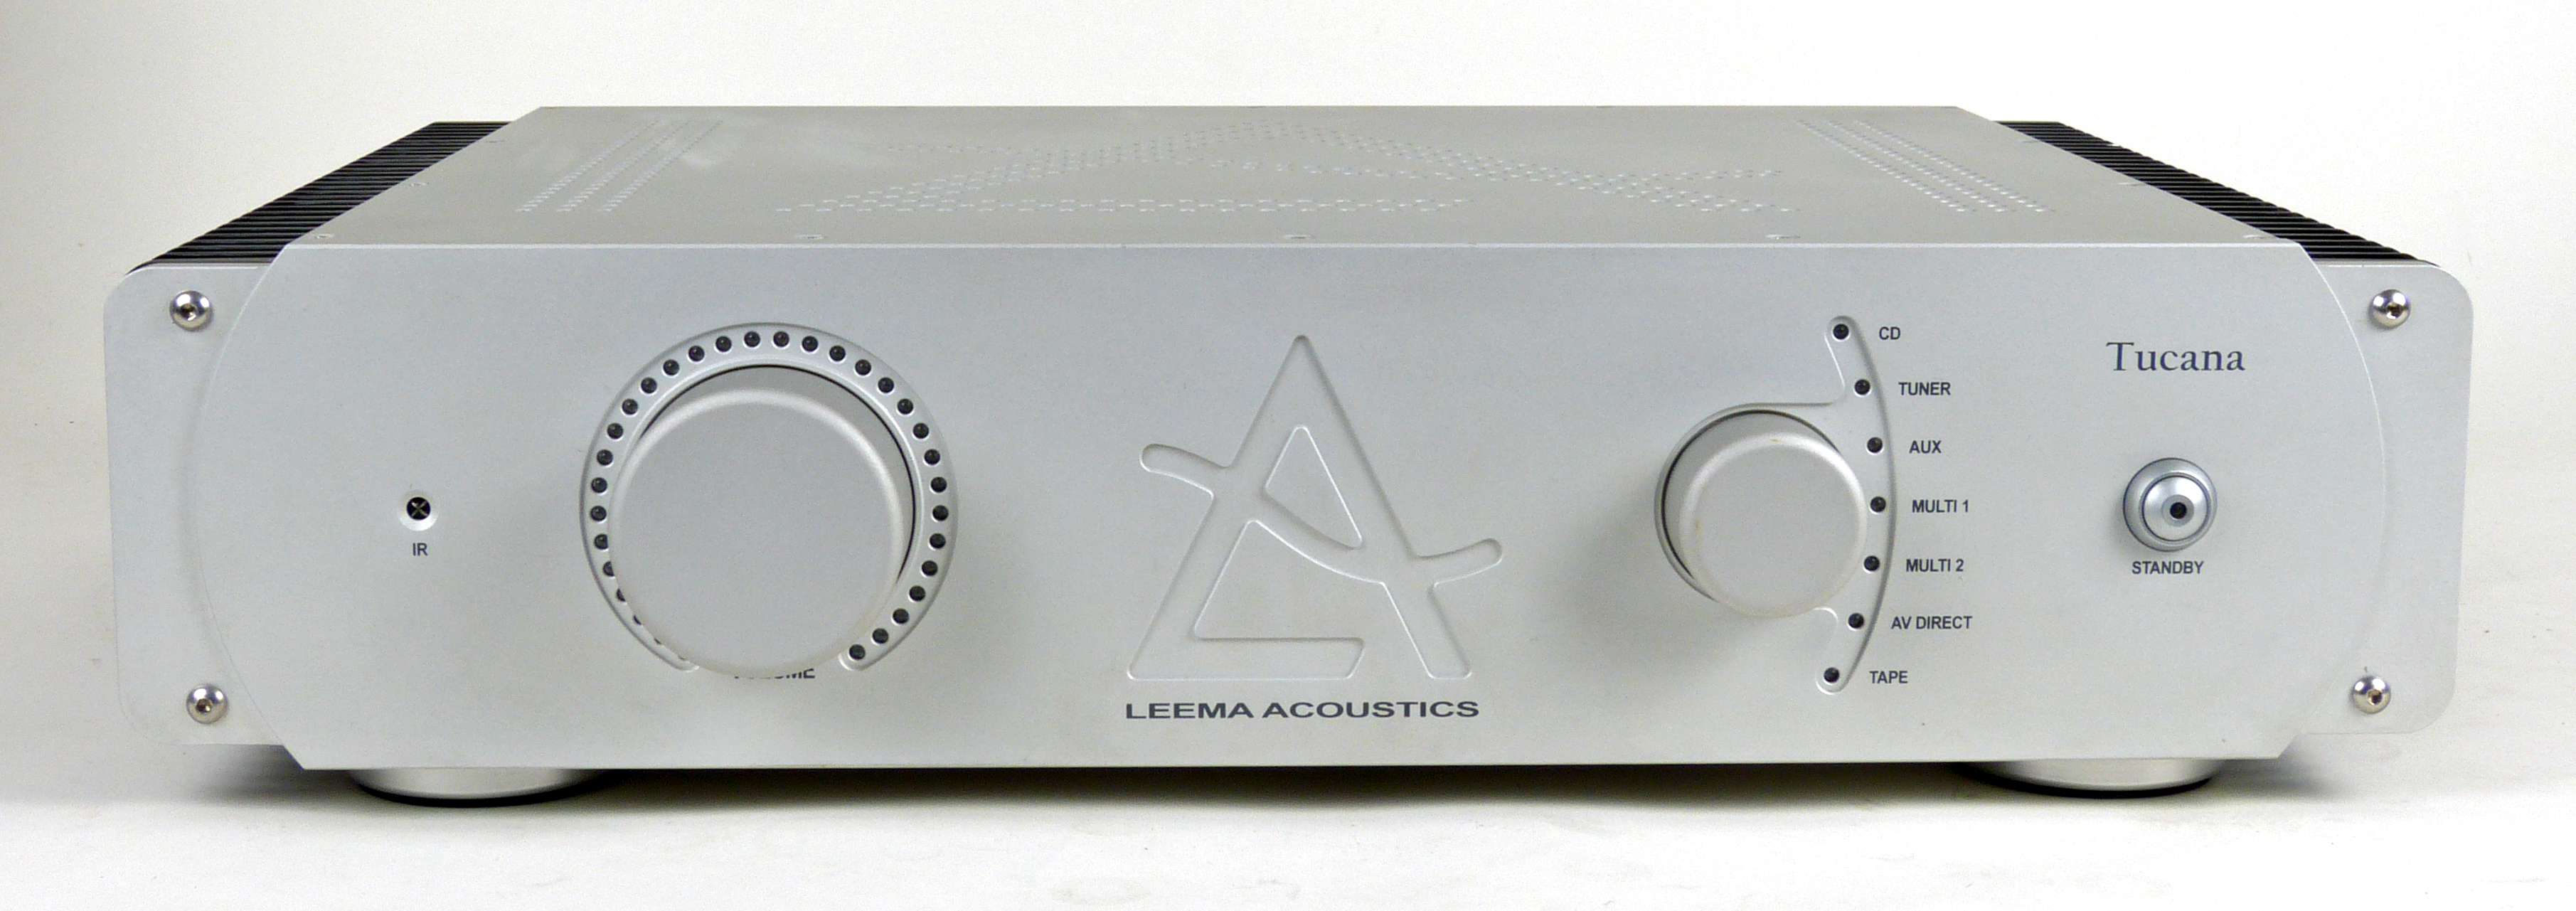 Leema Acoustics Tucana, gebraucht, 1 Jahr  Garantie